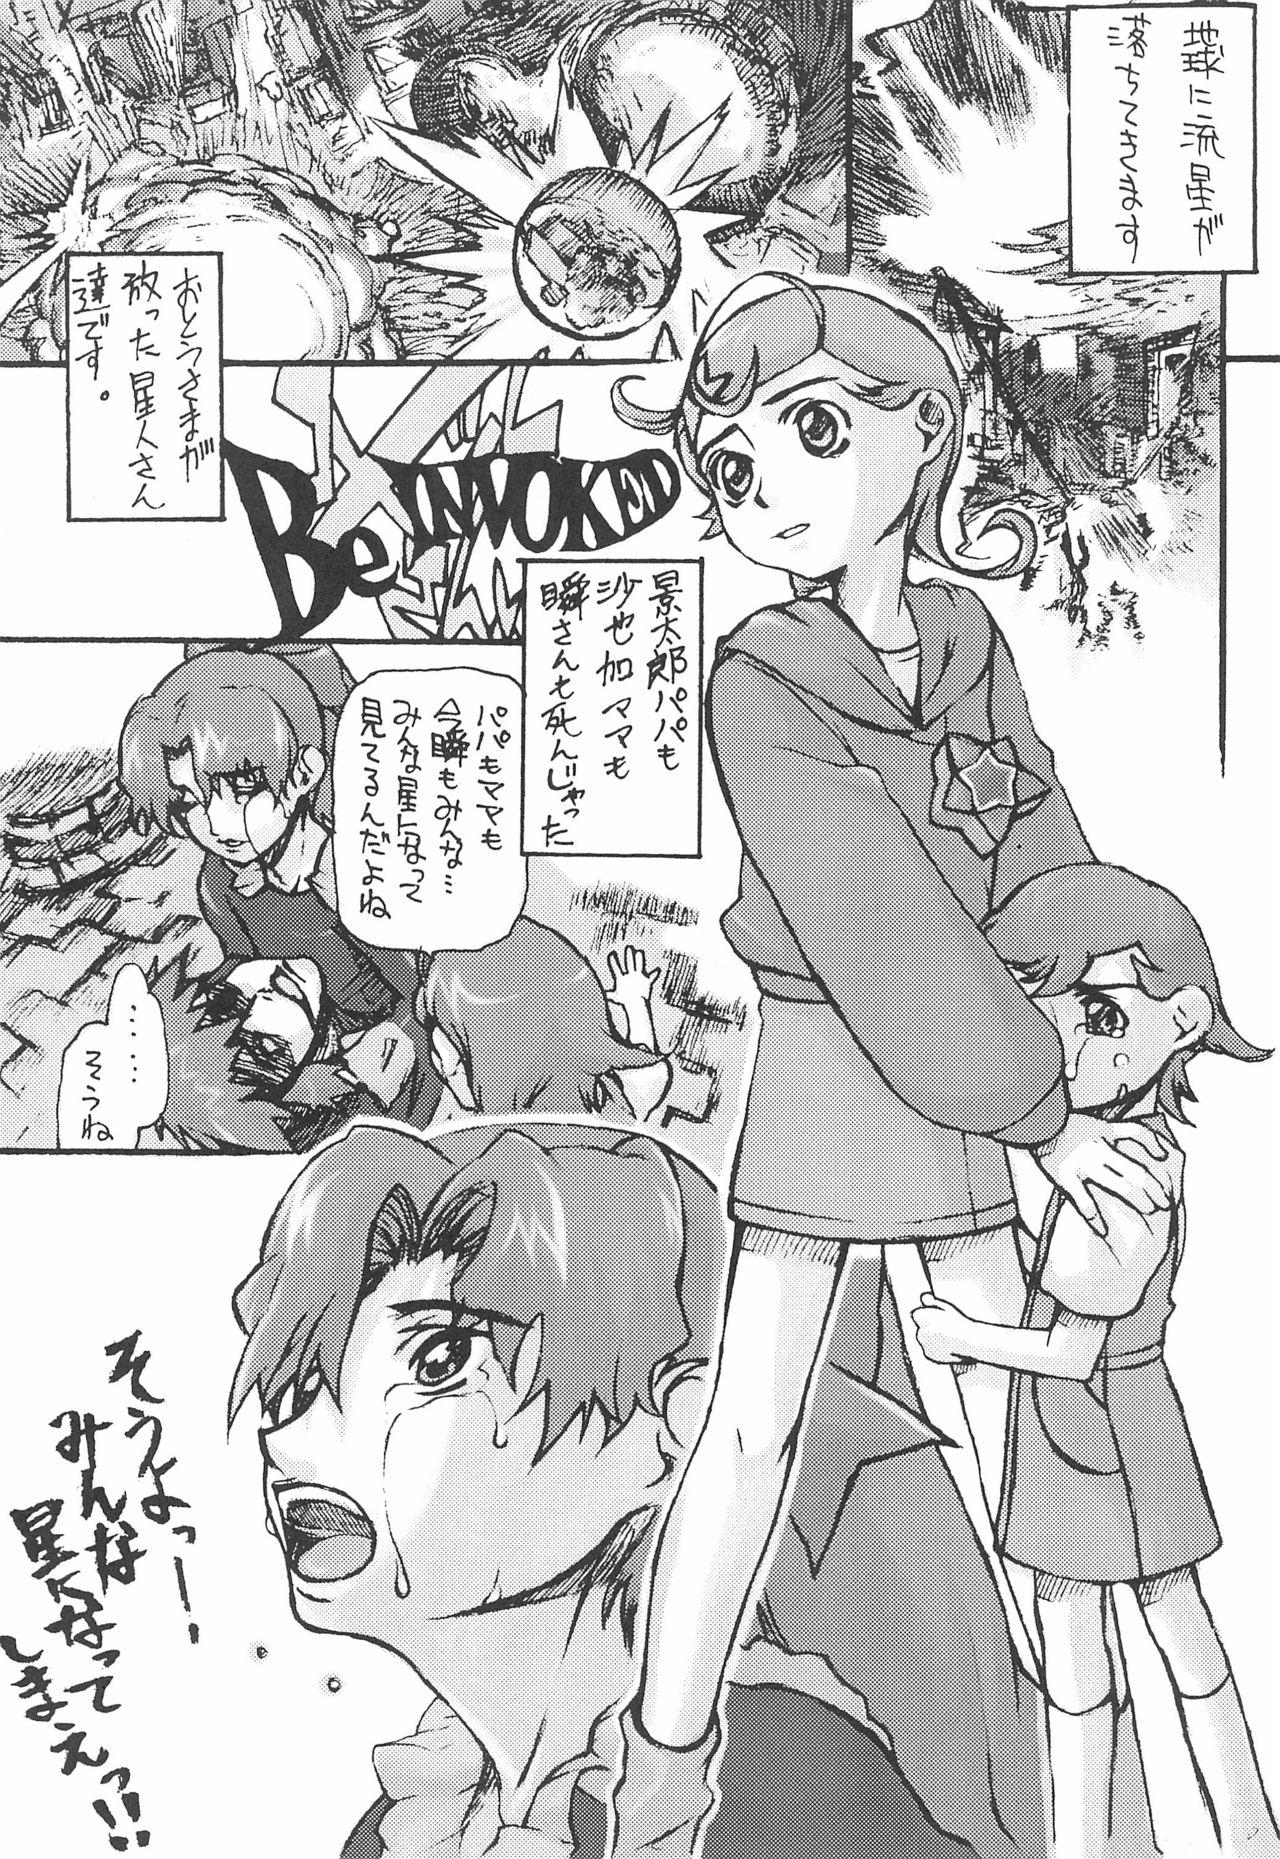 Gay 3some Comet-san Comical Comics - Cosmic baton girl comet-san Gay Brokenboys - Page 9